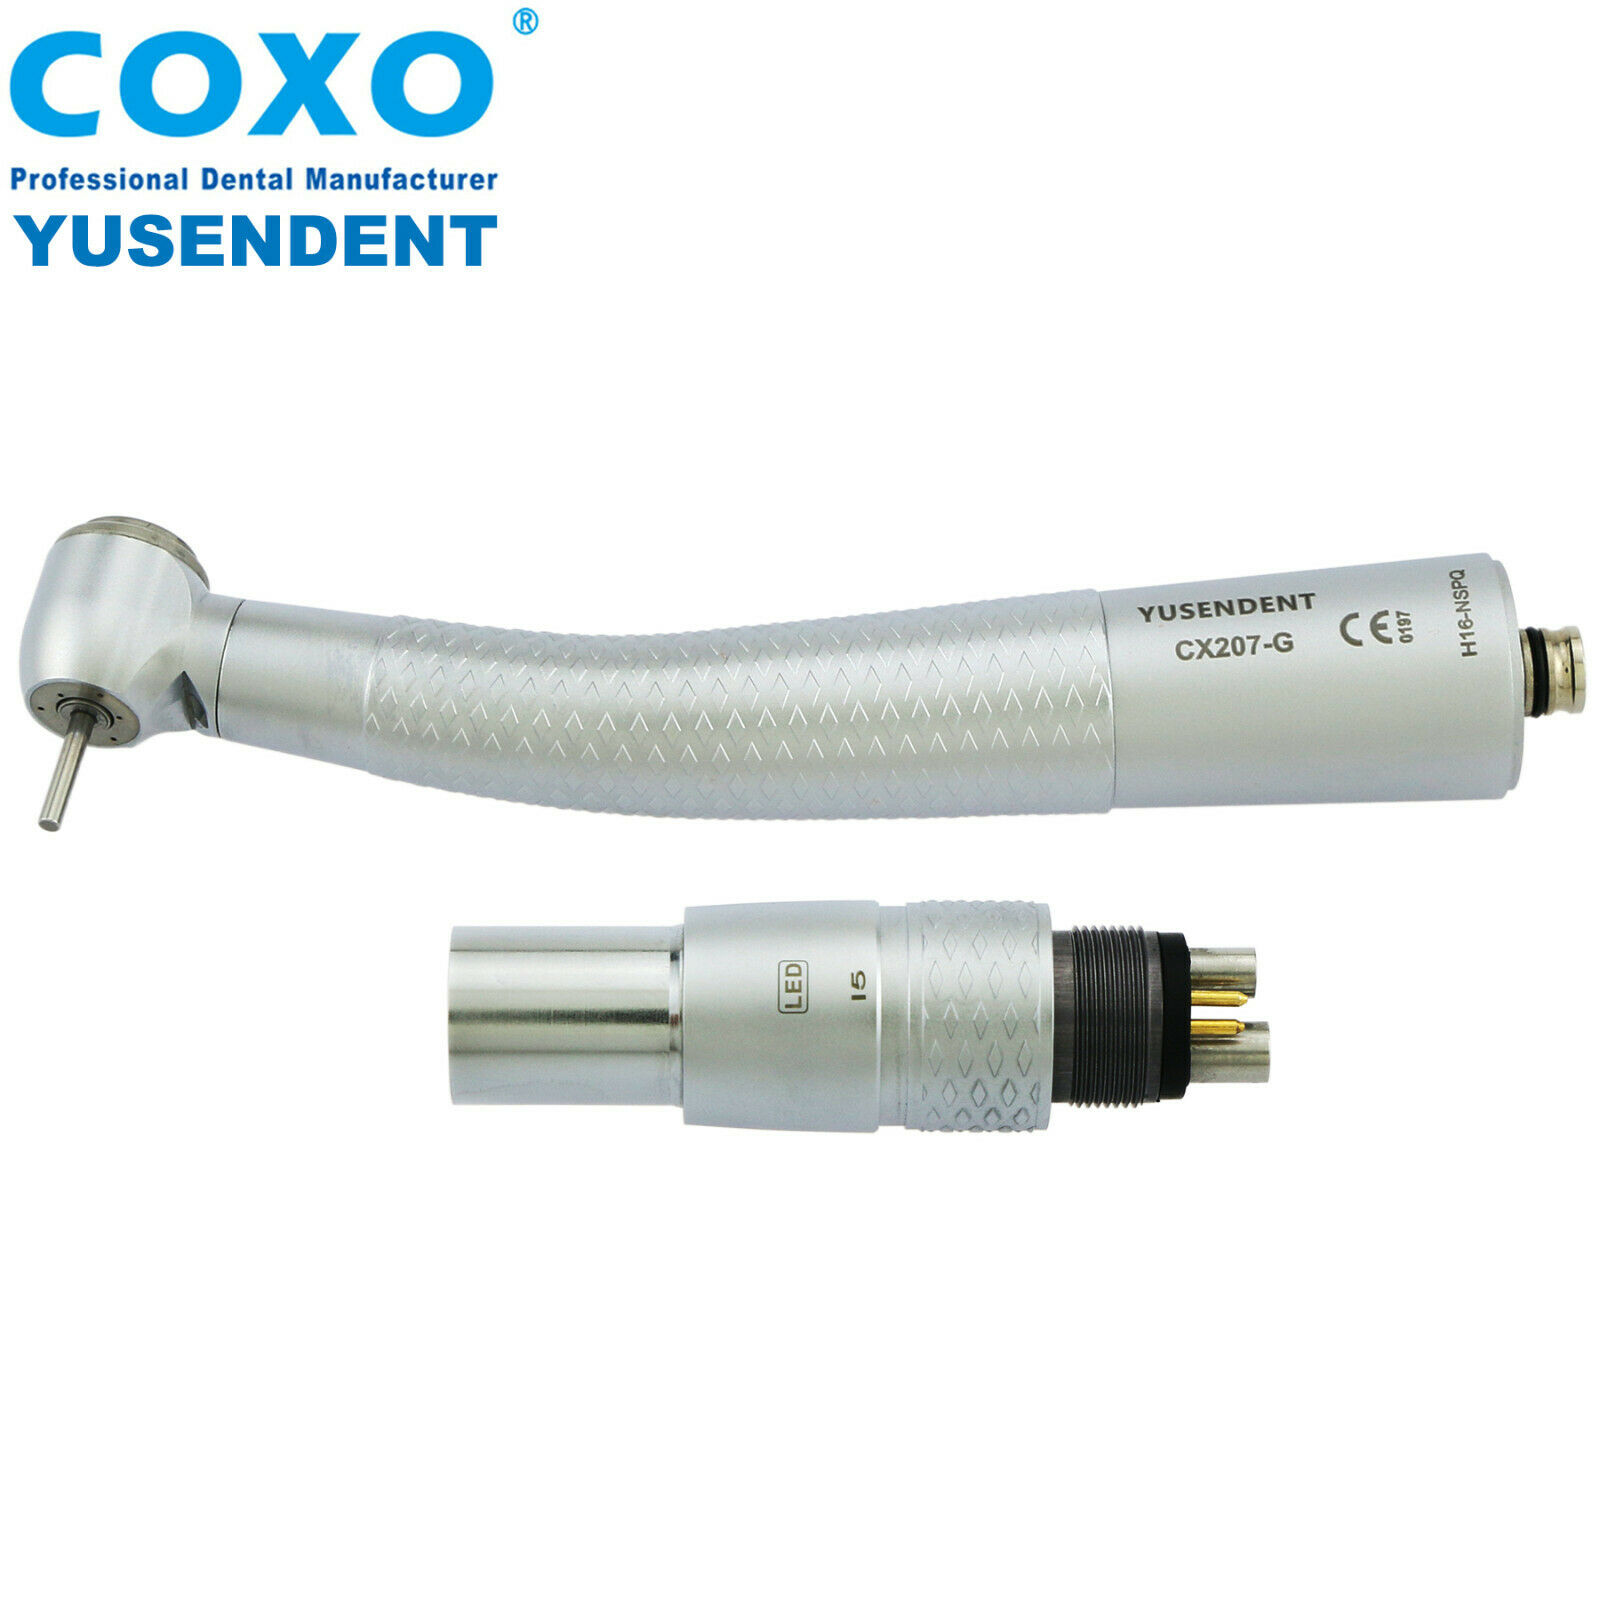 COXO®歯科用ライト付き高速ハンドピースCX207-GN-SP（NSKとコンパチブル、カップリング付き）